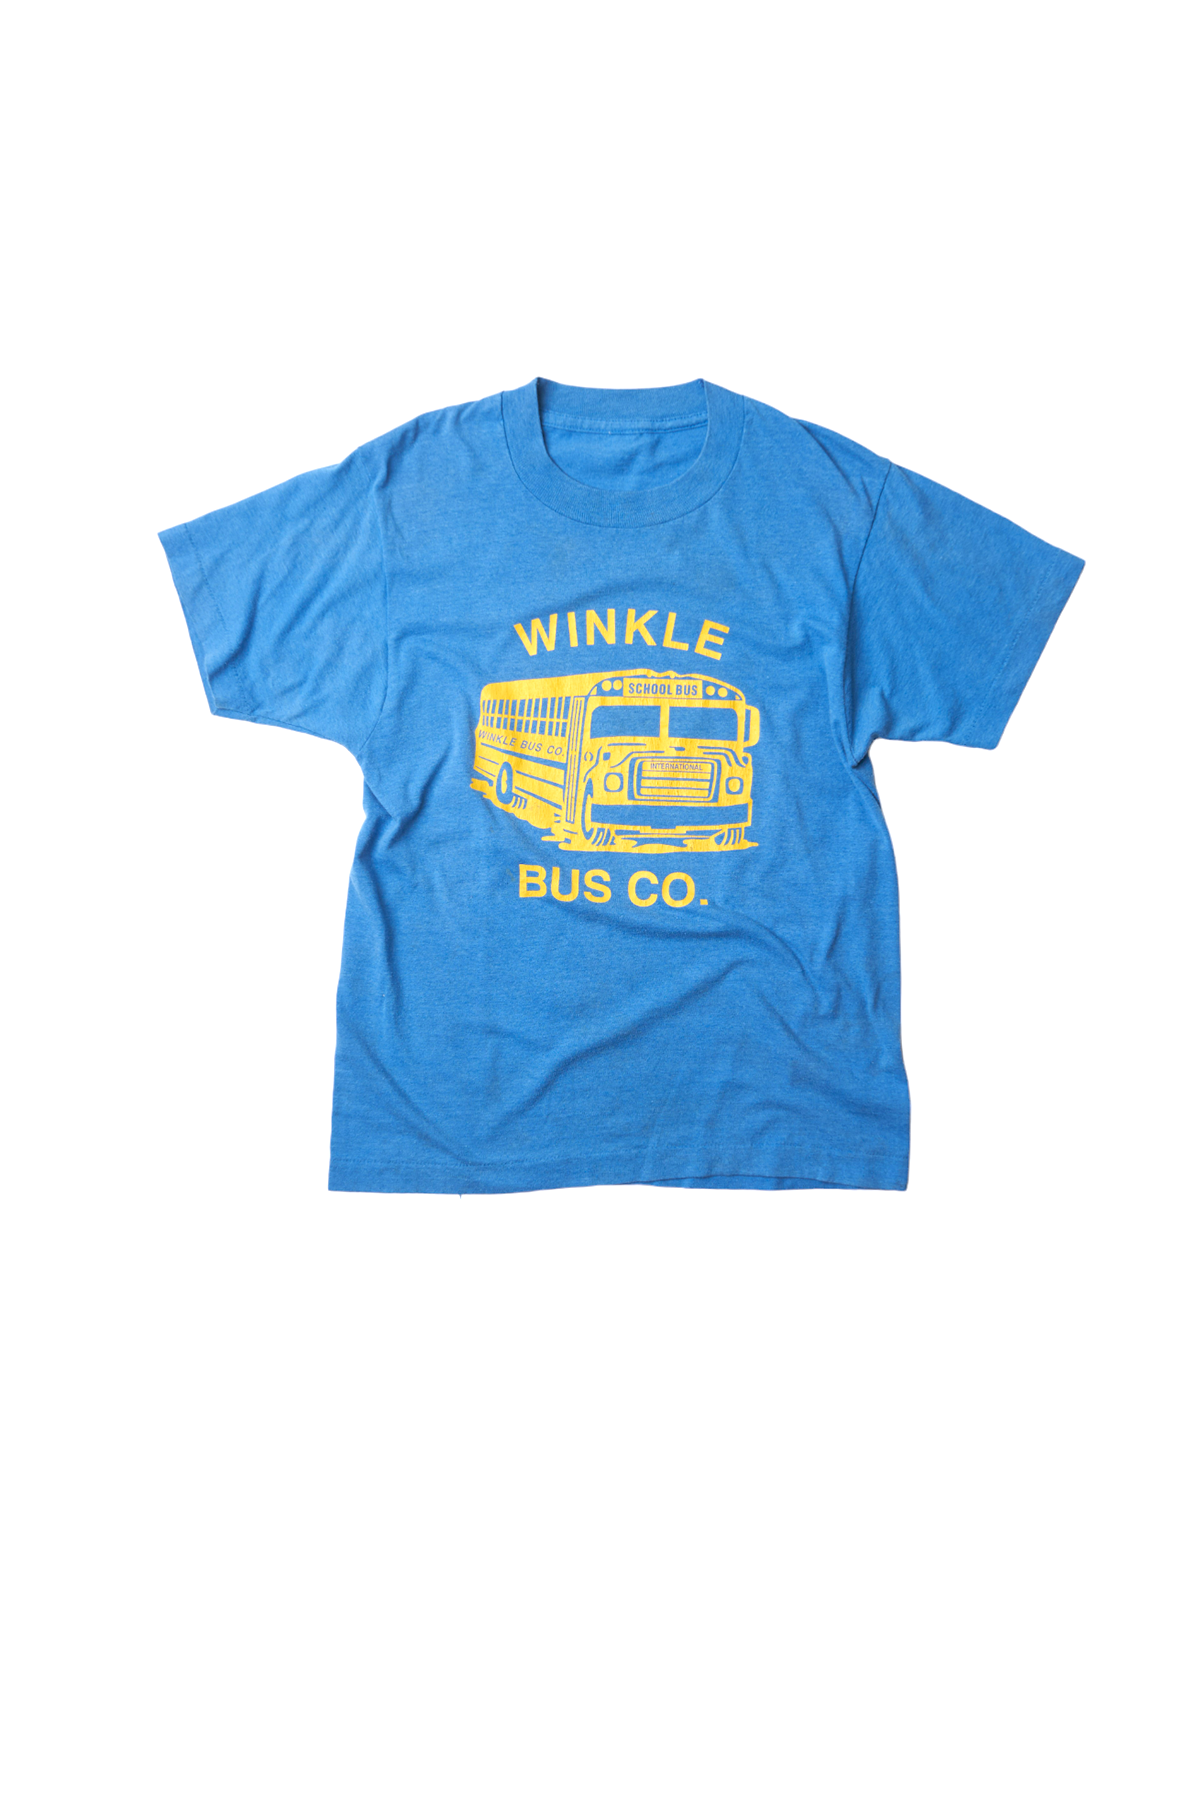 VINTAGE TEE |  winkle bus co